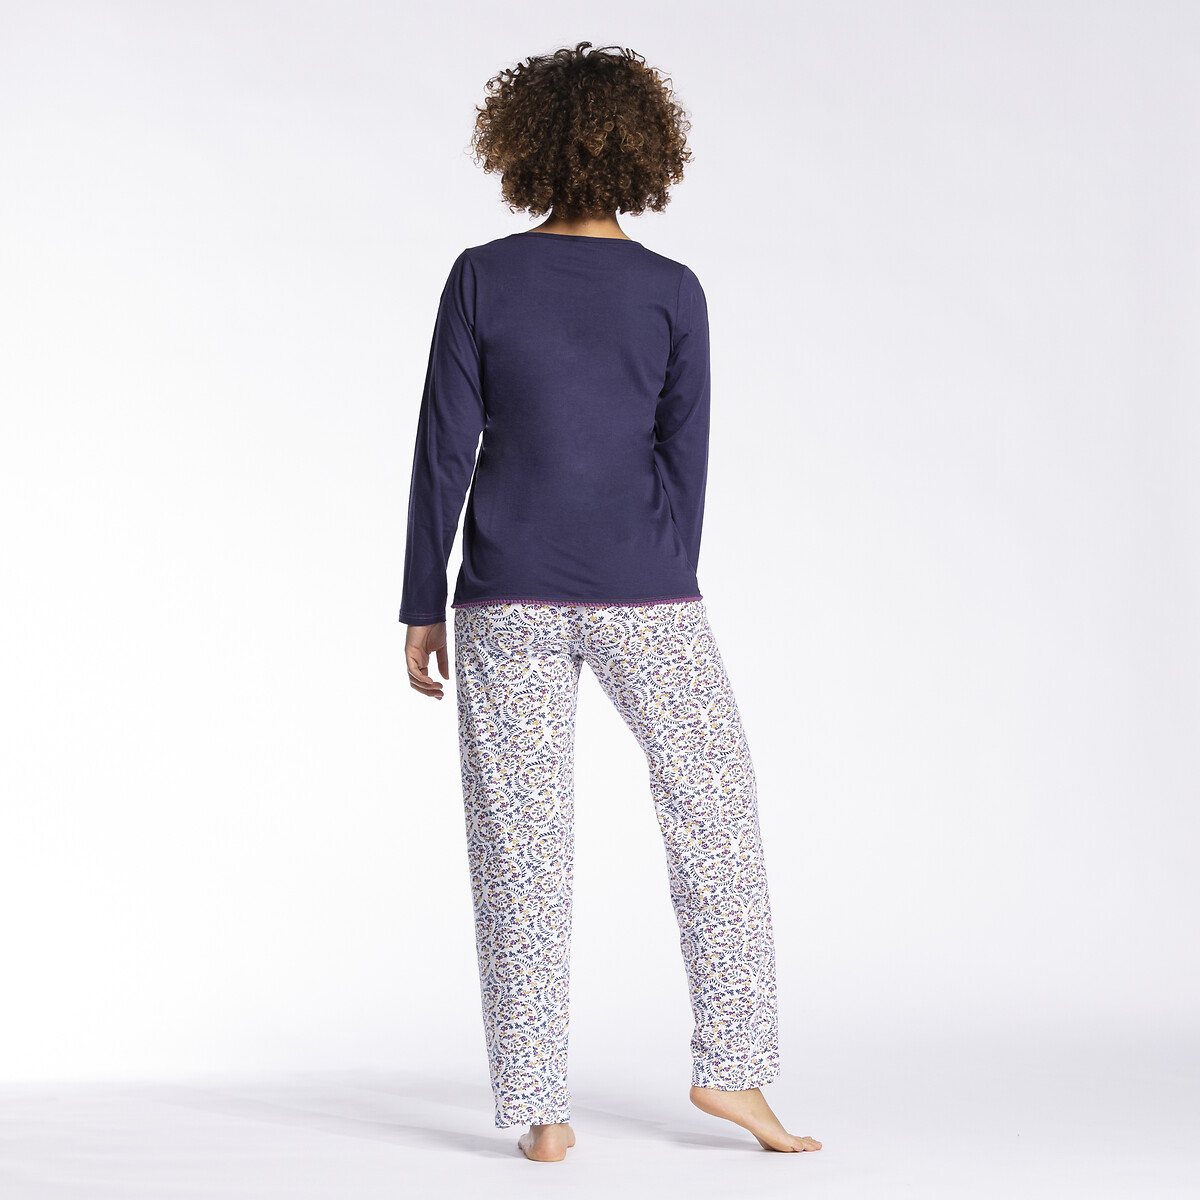 La Redoute Vêtements Sous-vêtements vêtements de nuit Pyjamas marine/écru Pyjama combishort rayé en coton 